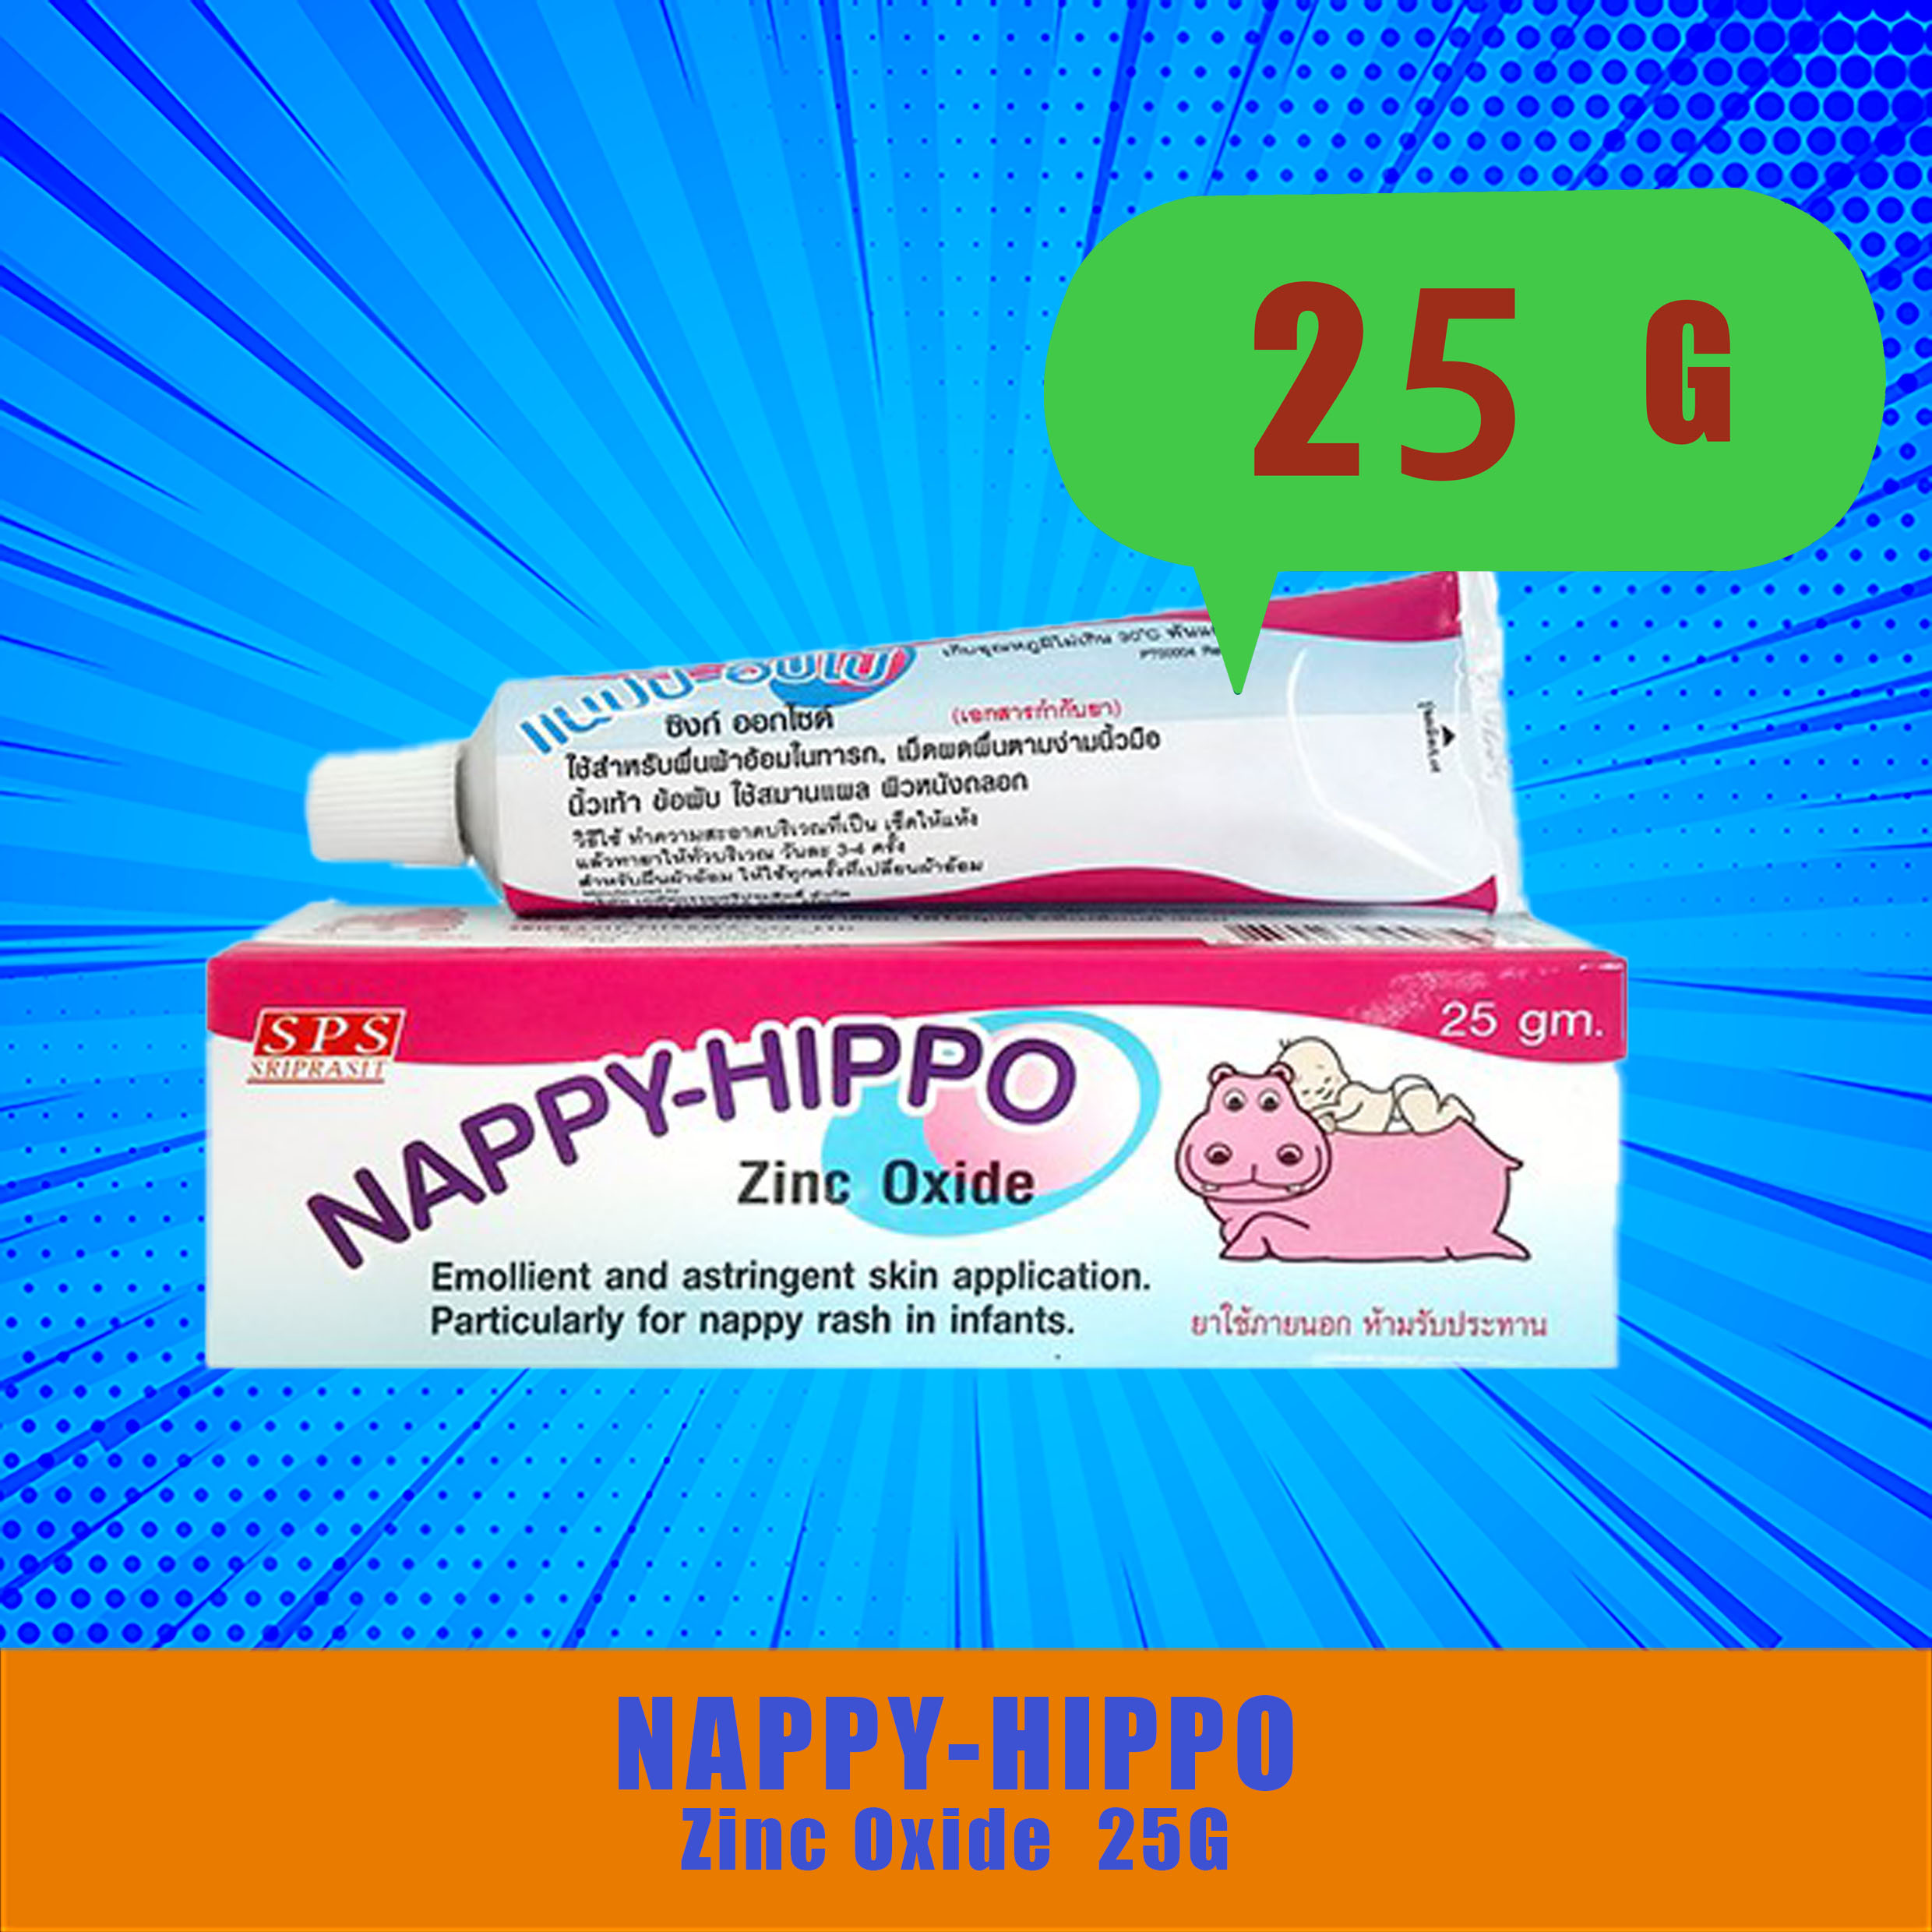 ( 25 กรัม ) Nappy-Hippon แนปปี้ ฮิปโป้ ซิงก์ ออกไซด์ ครีมทาผื่นผ้าอ้อม สมานแผลถลอก